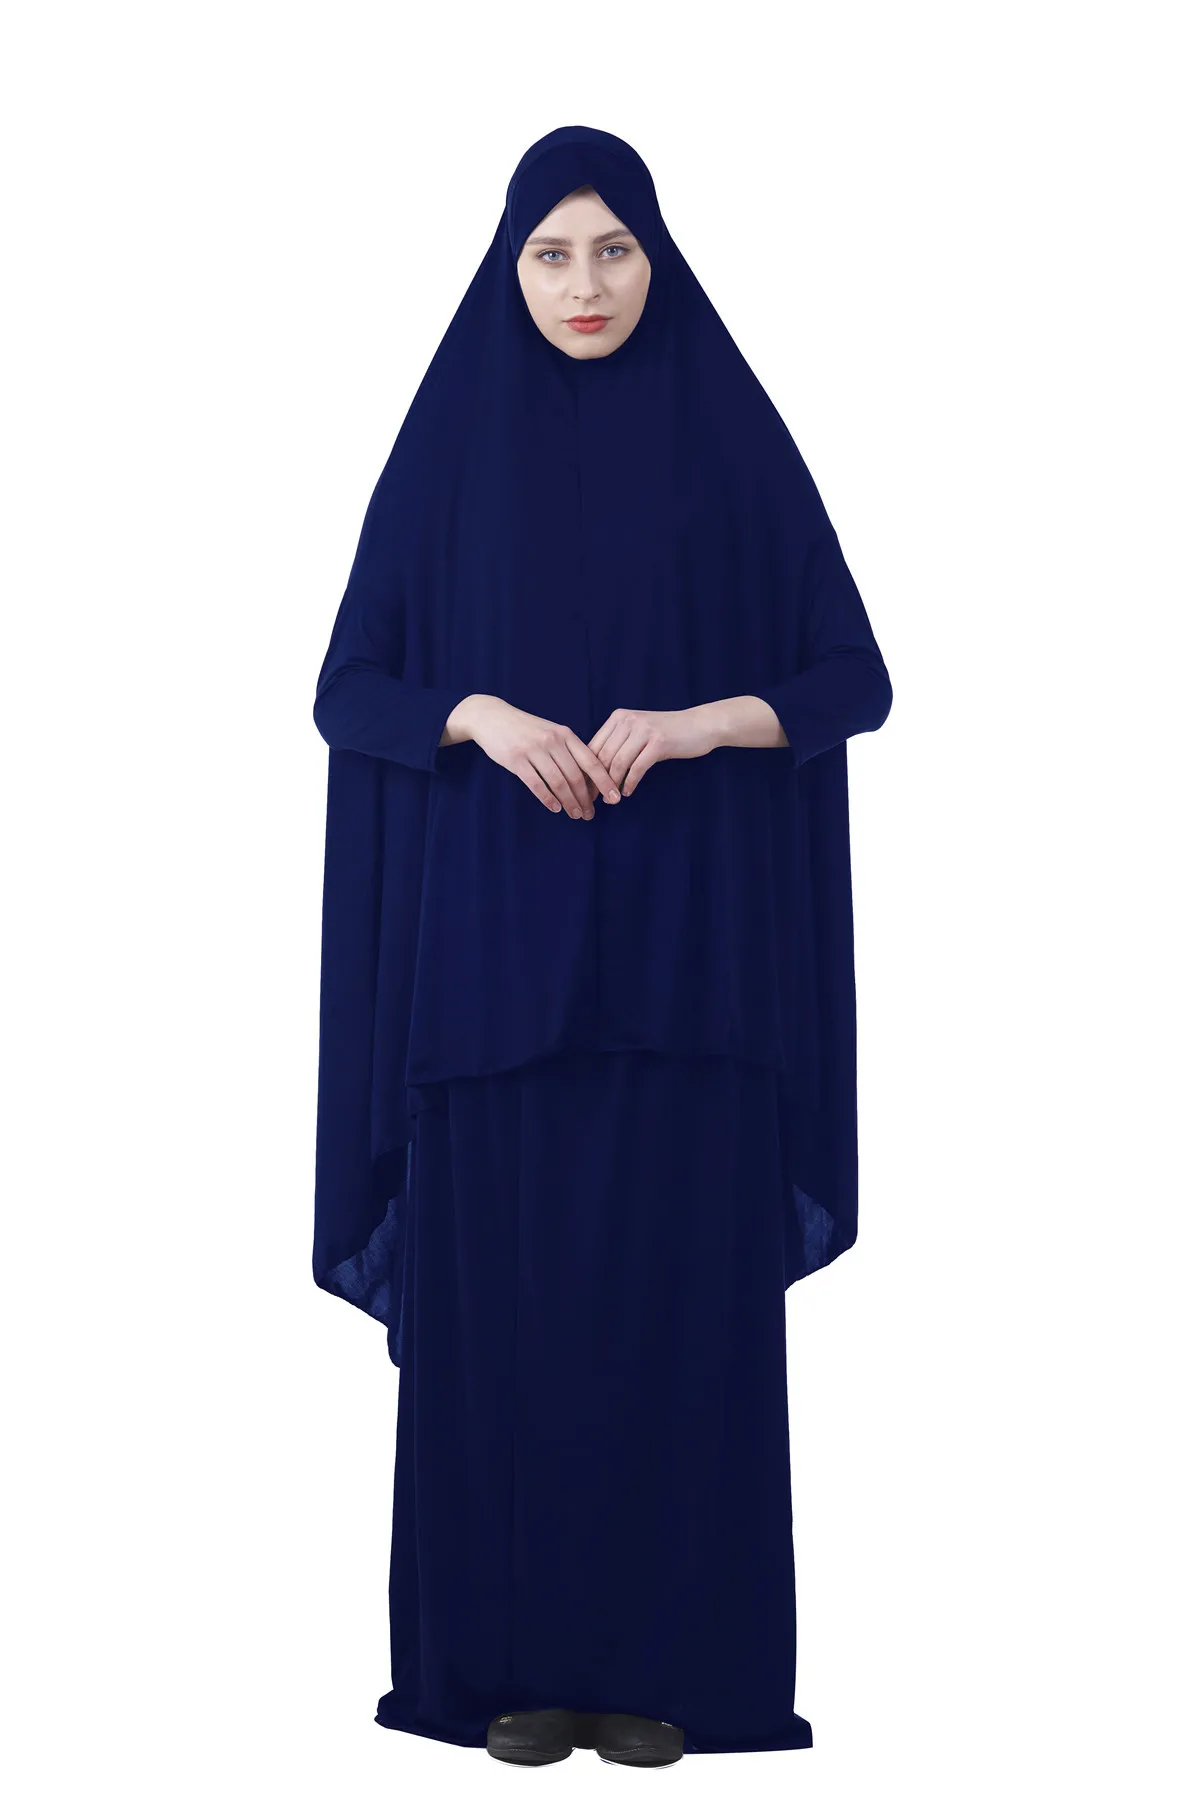 Комплект женской мусульманской длинной одежды, хиджаб, Турция, намаз, химар, юркен, Абая, Исламская одежда, Дубай от AliExpress WW